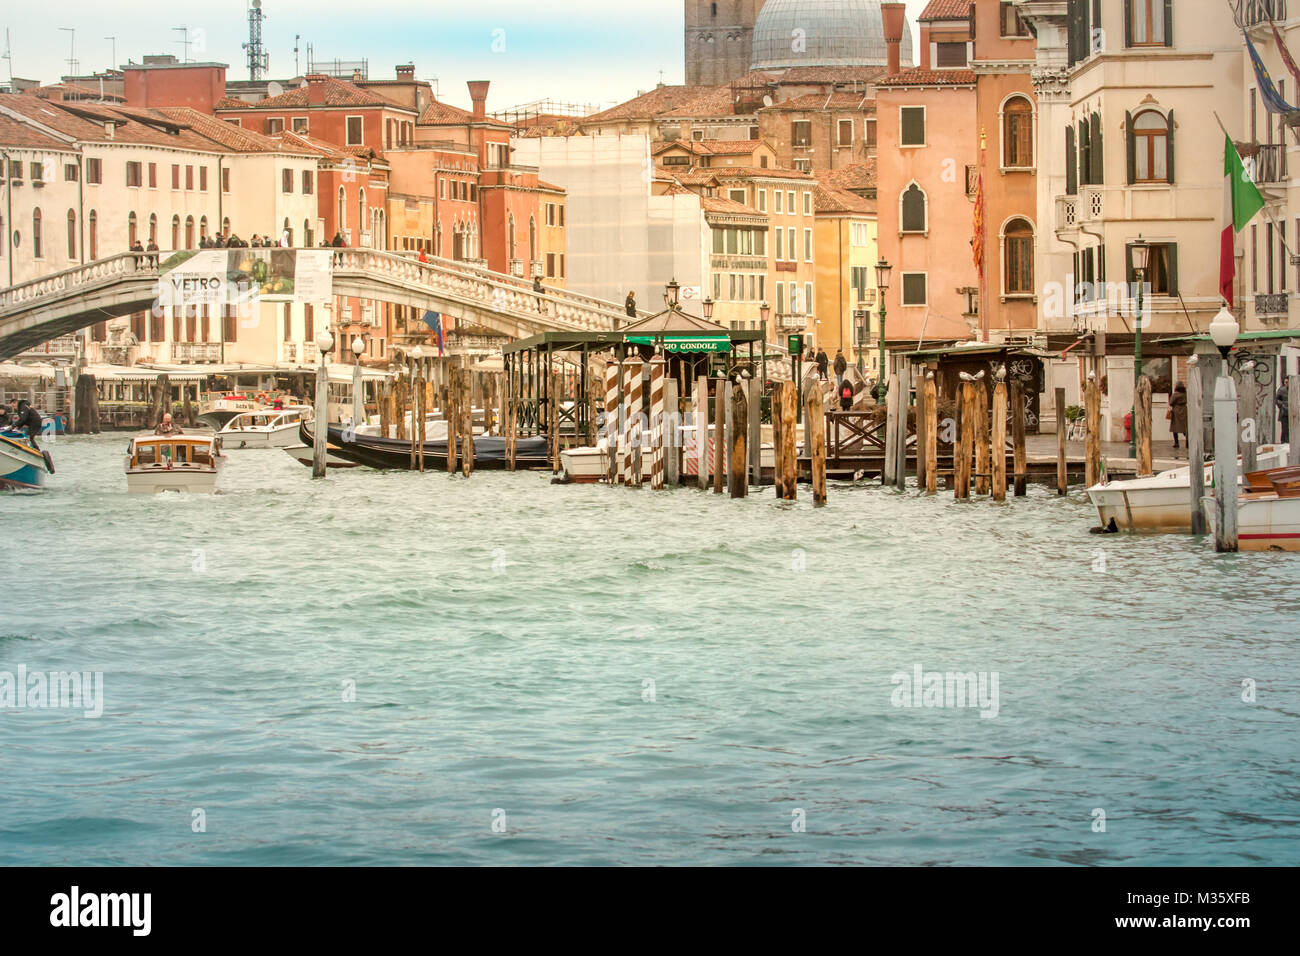 Grand Canal de Venise et de la célèbre architecture vénitienne Italie Voyage bâtiments Banque D'Images